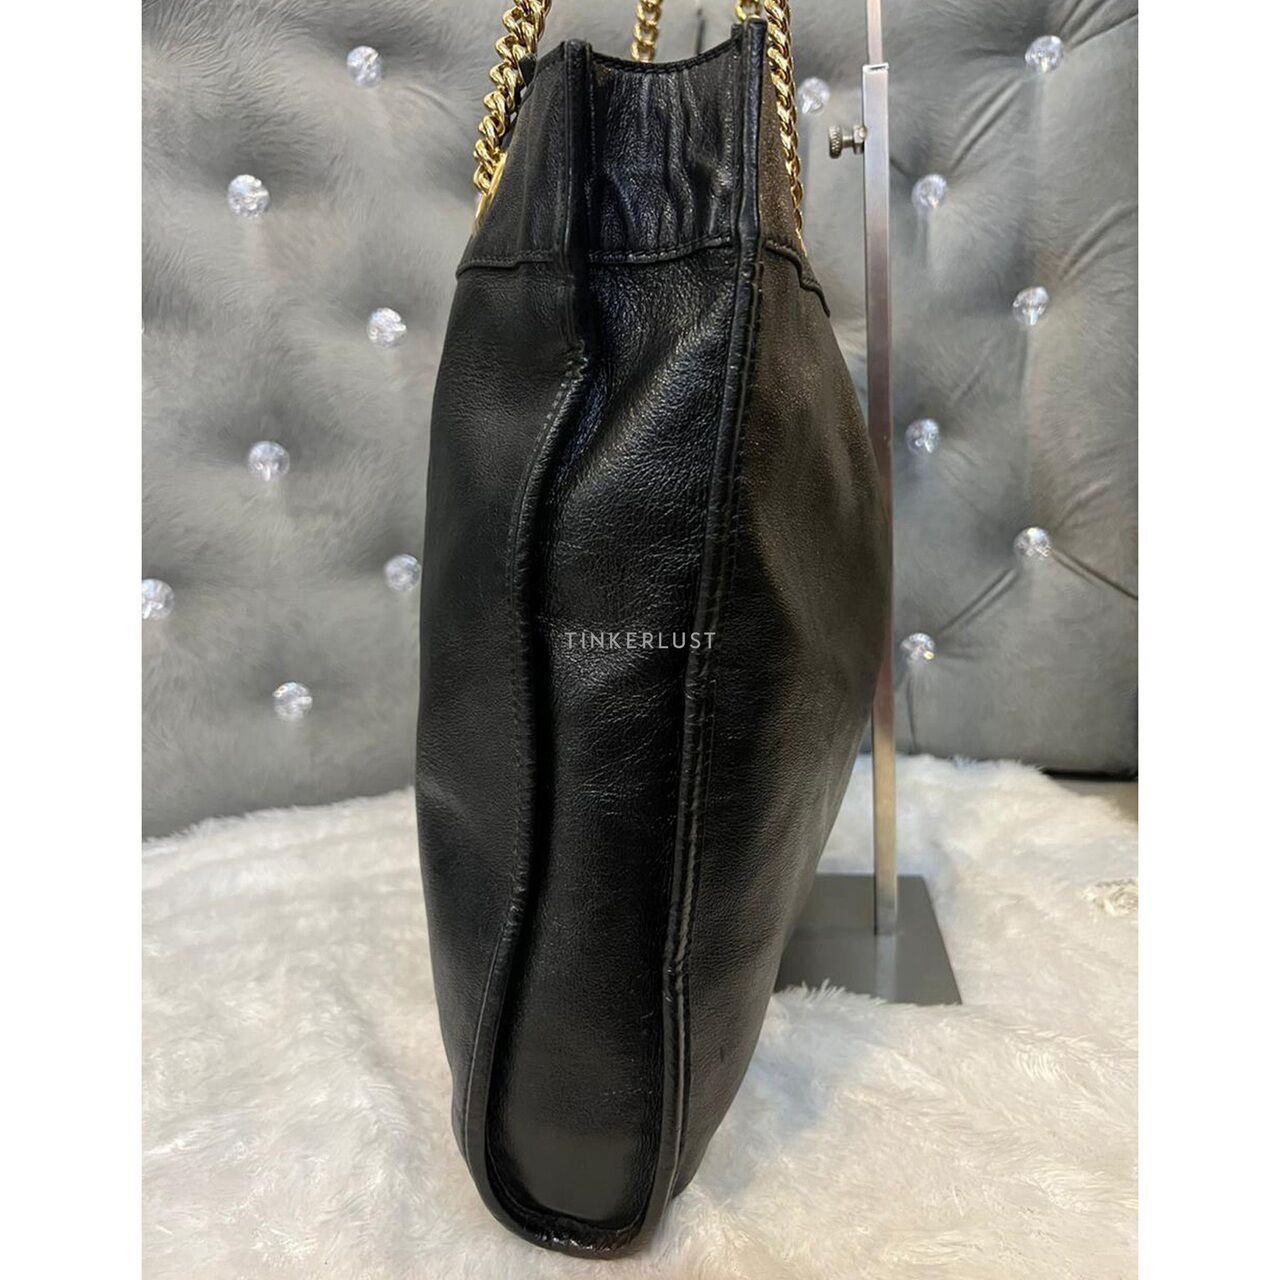 Gucci Rajah Large Black Leather Tote Bag